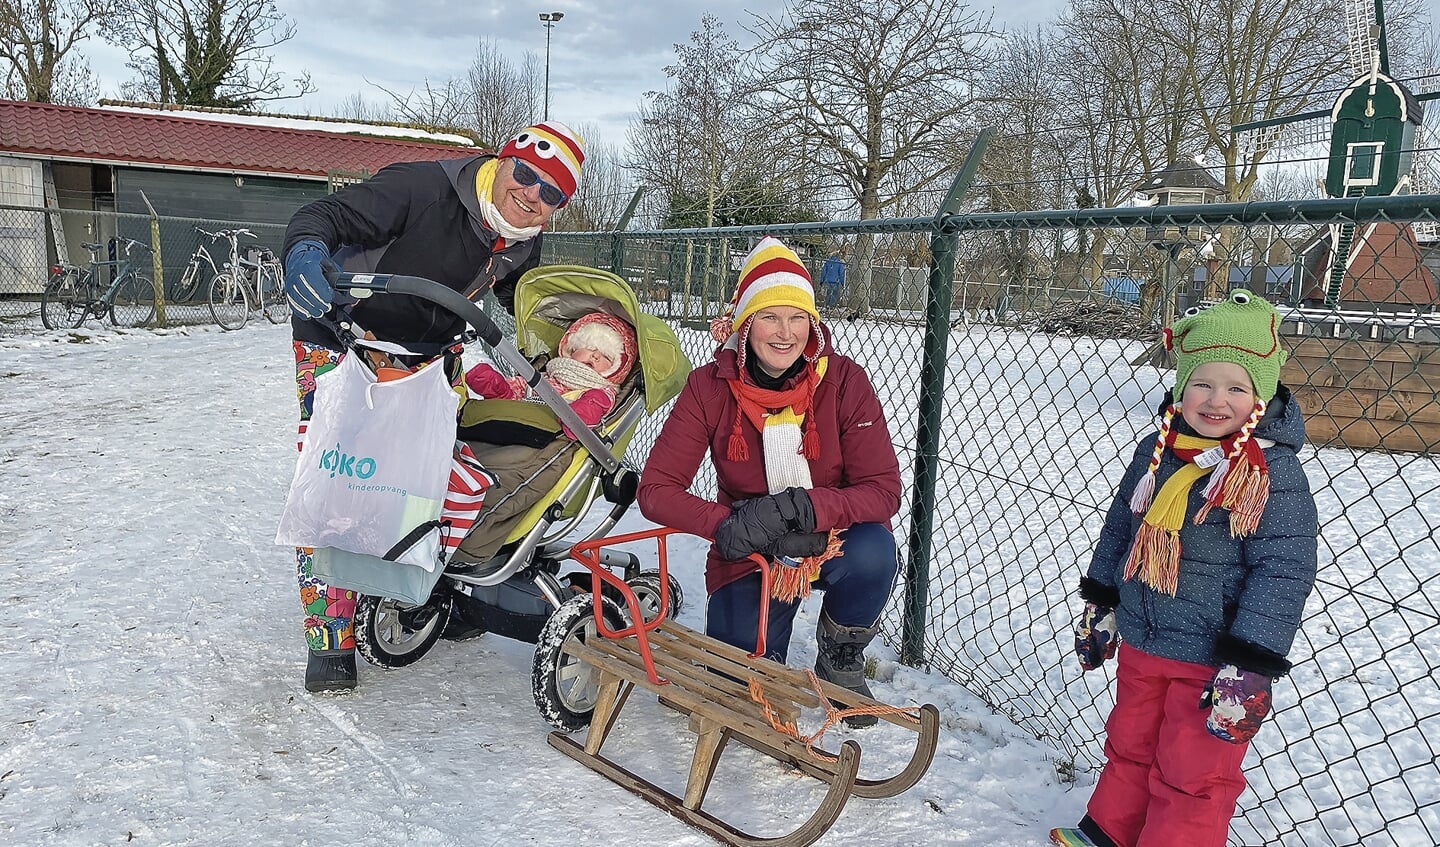 Familie Marree uit Montfoort maakten zondagmiddag een verlaat carnavalsommetje. Die ochtend hadden ze nog op de schaats gestaan.